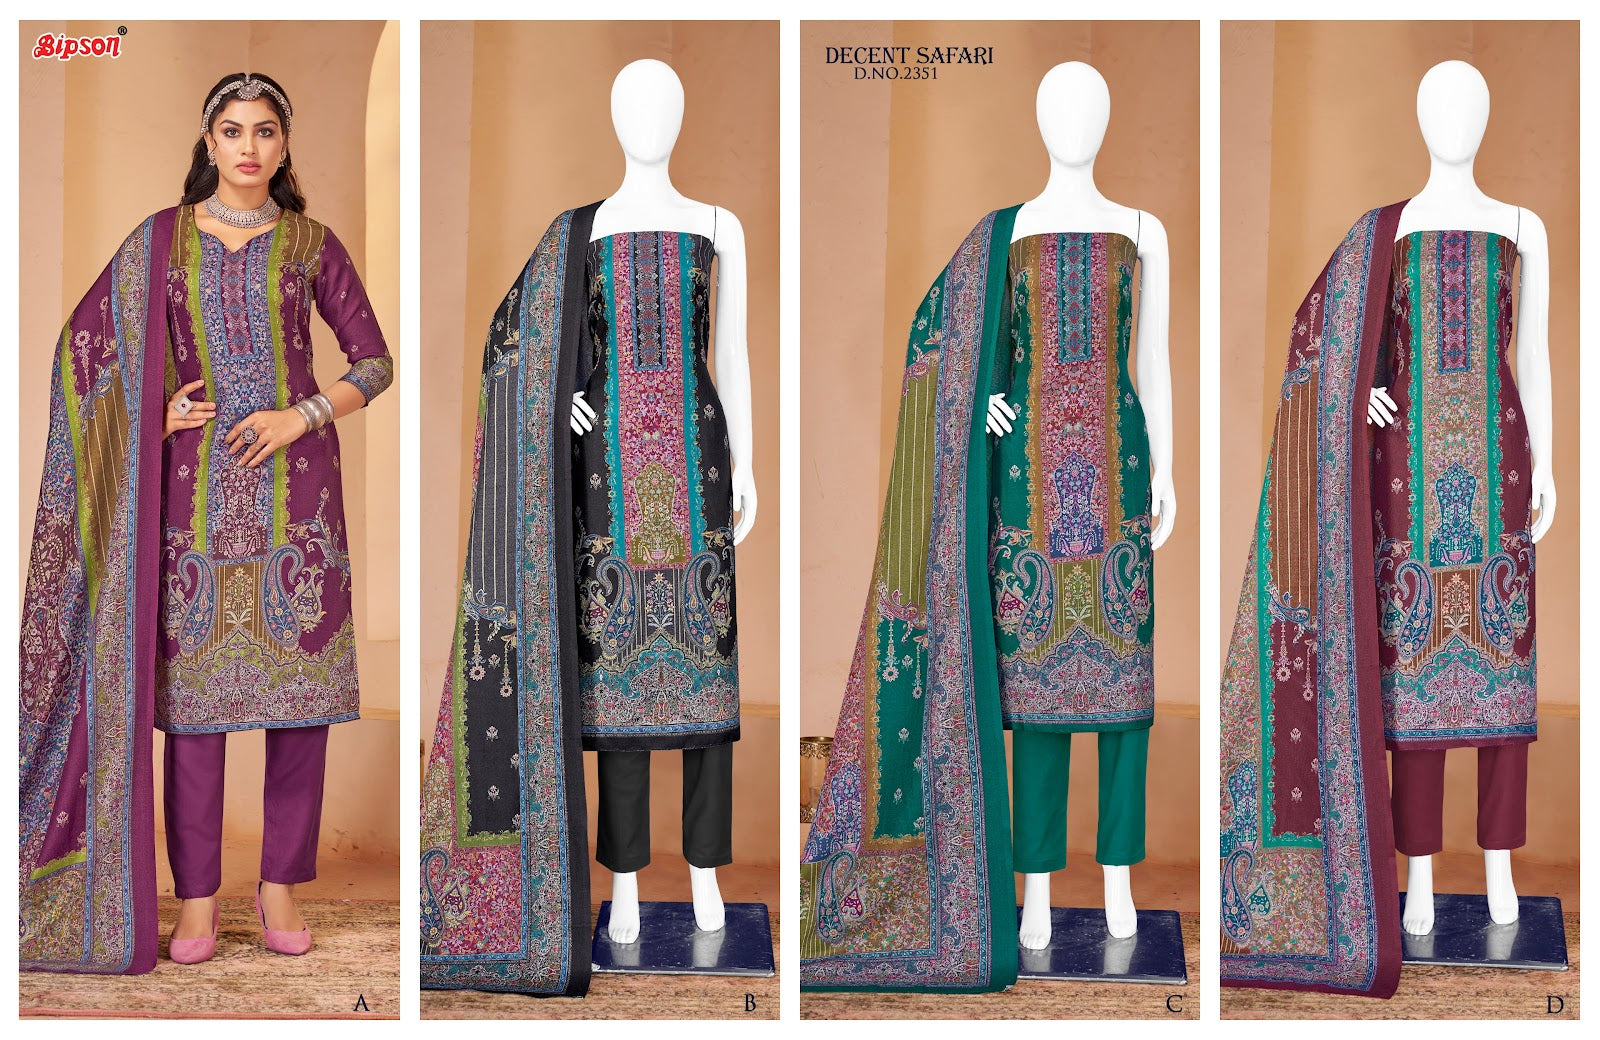 Decent Safari 2351 Bipson Prints Pashmina Suits